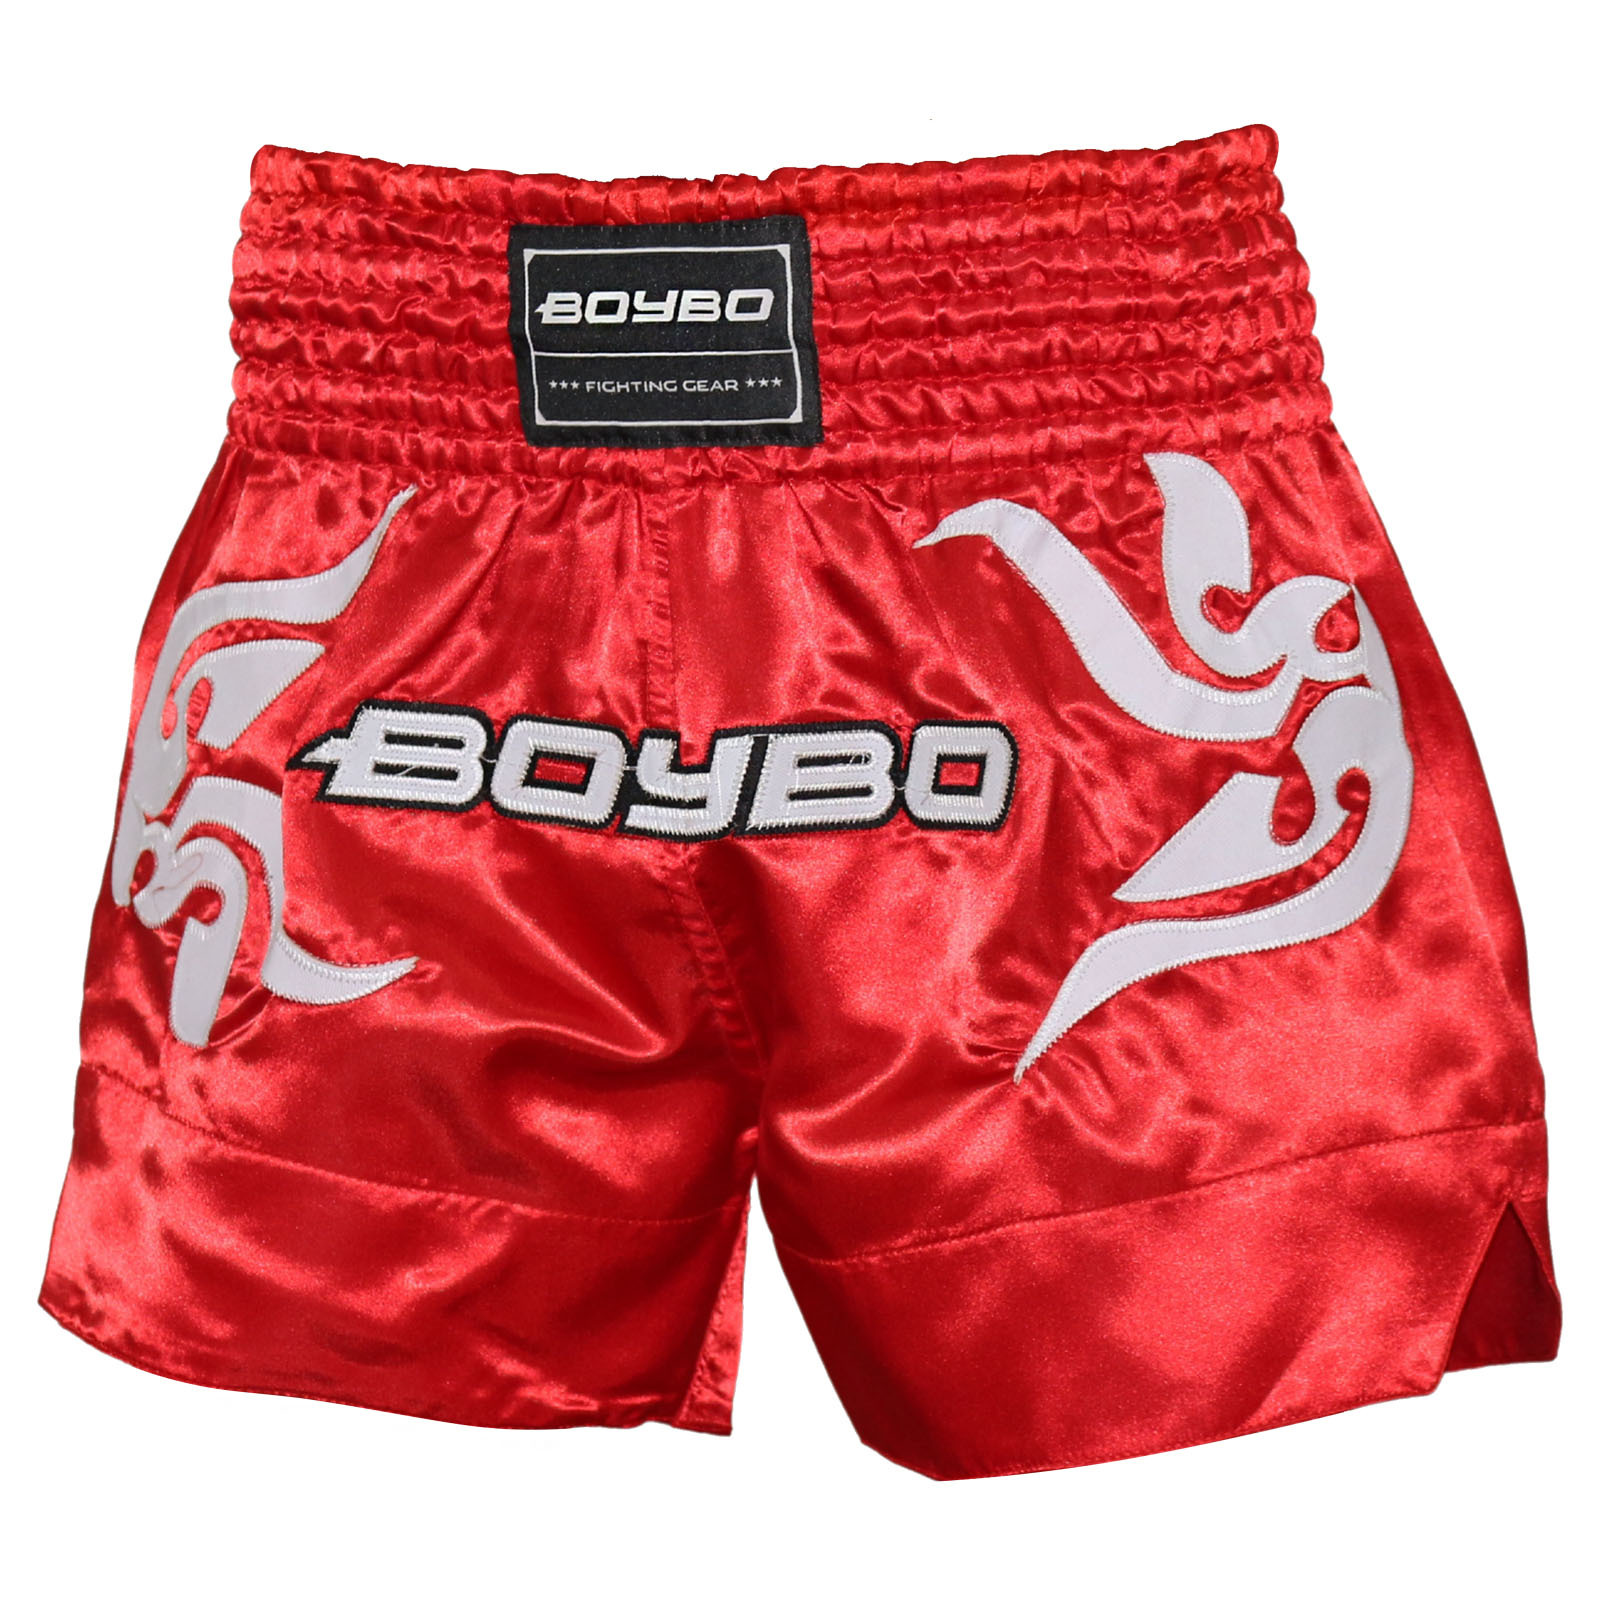 Шорты BoyBo для тайского бокса красные,BST882 (XL)